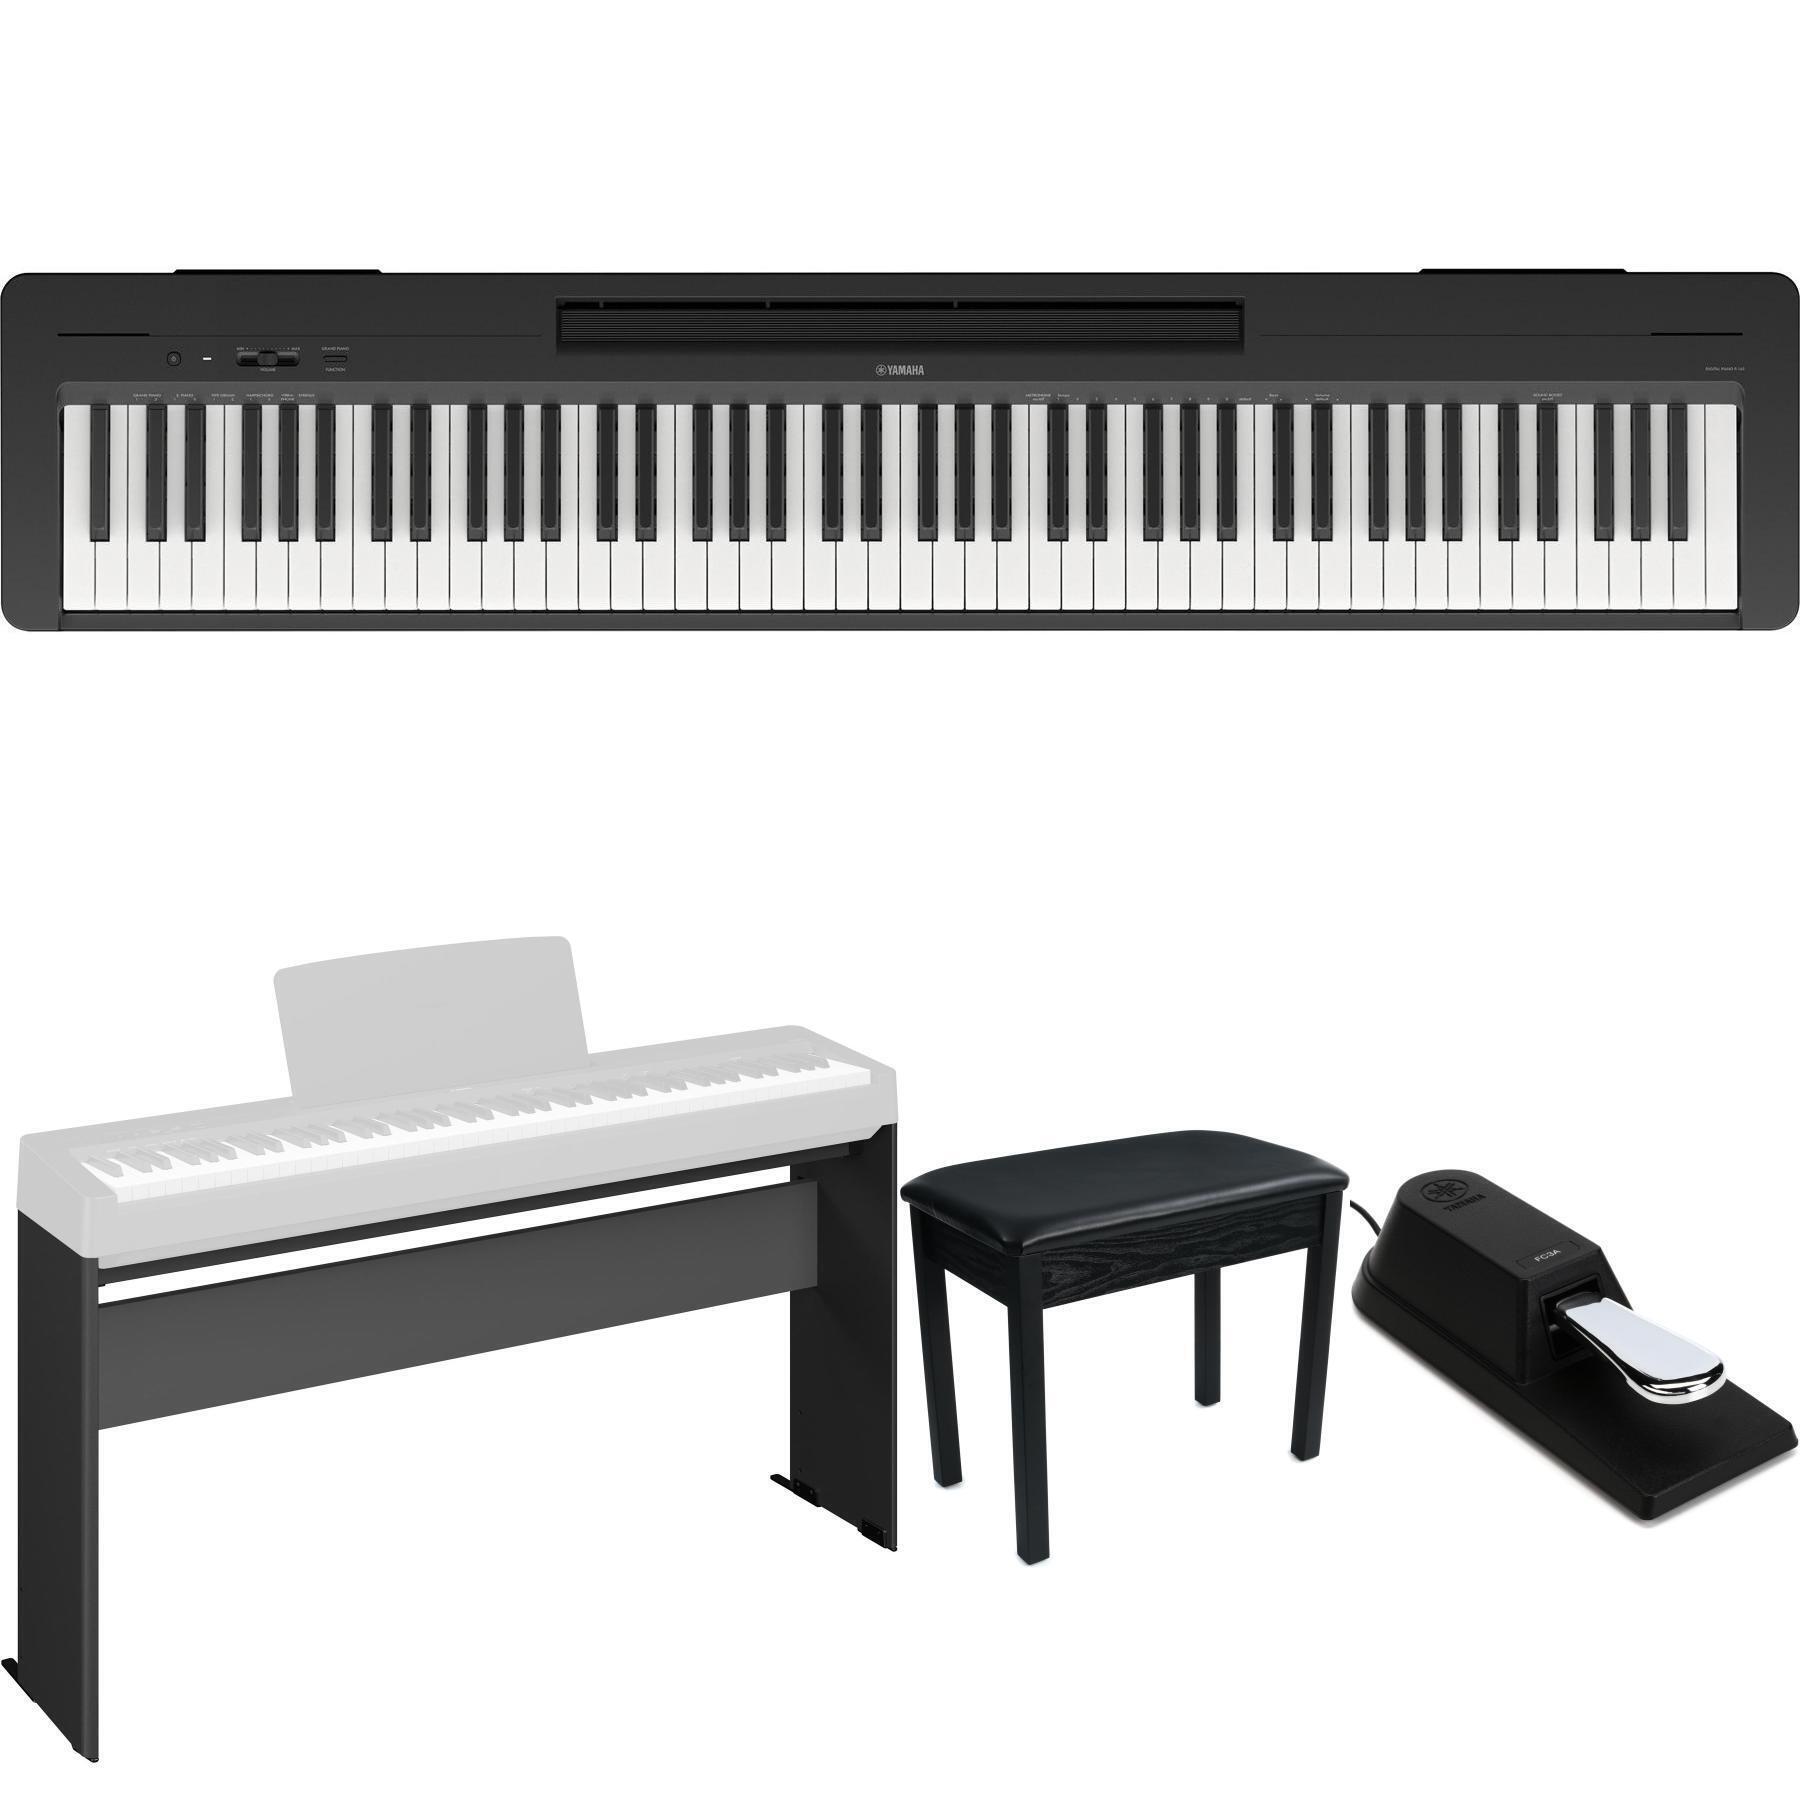 P-143 - Accessoires optionnels - SERIE P - Pianos - Instruments de musique  - Produits - Yamaha - France